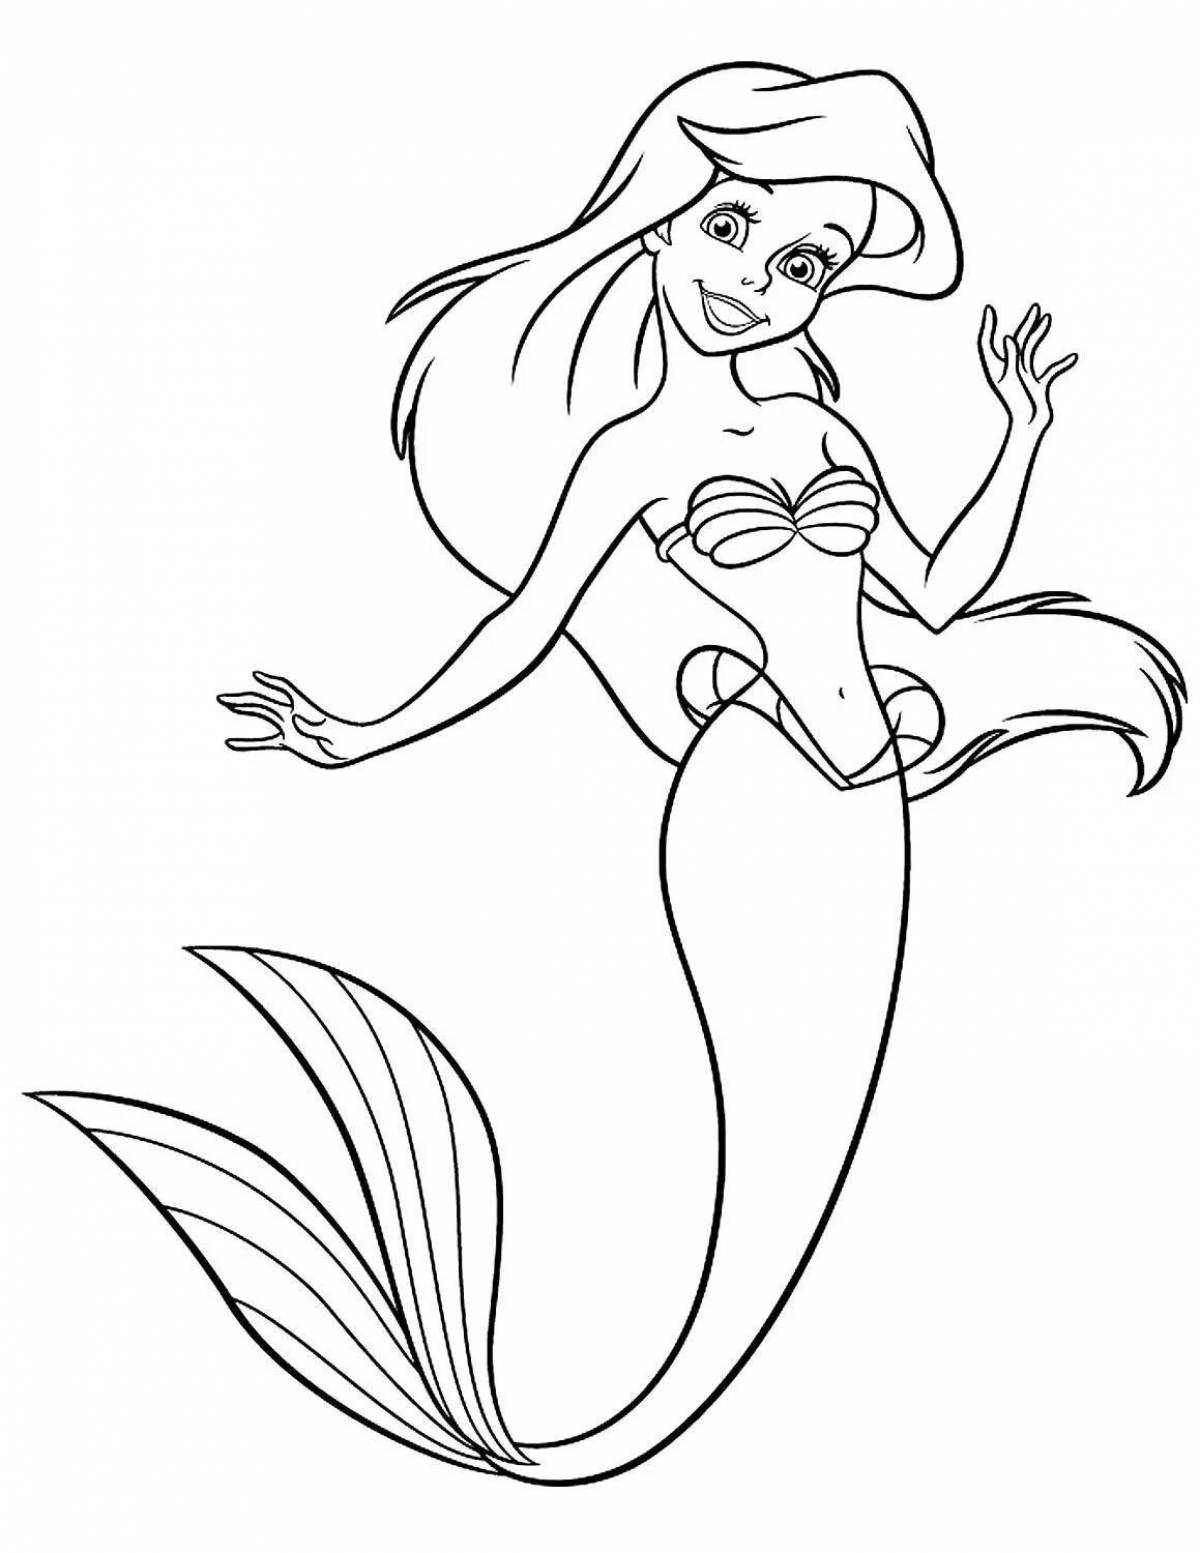 Amazing mermaid princess coloring book